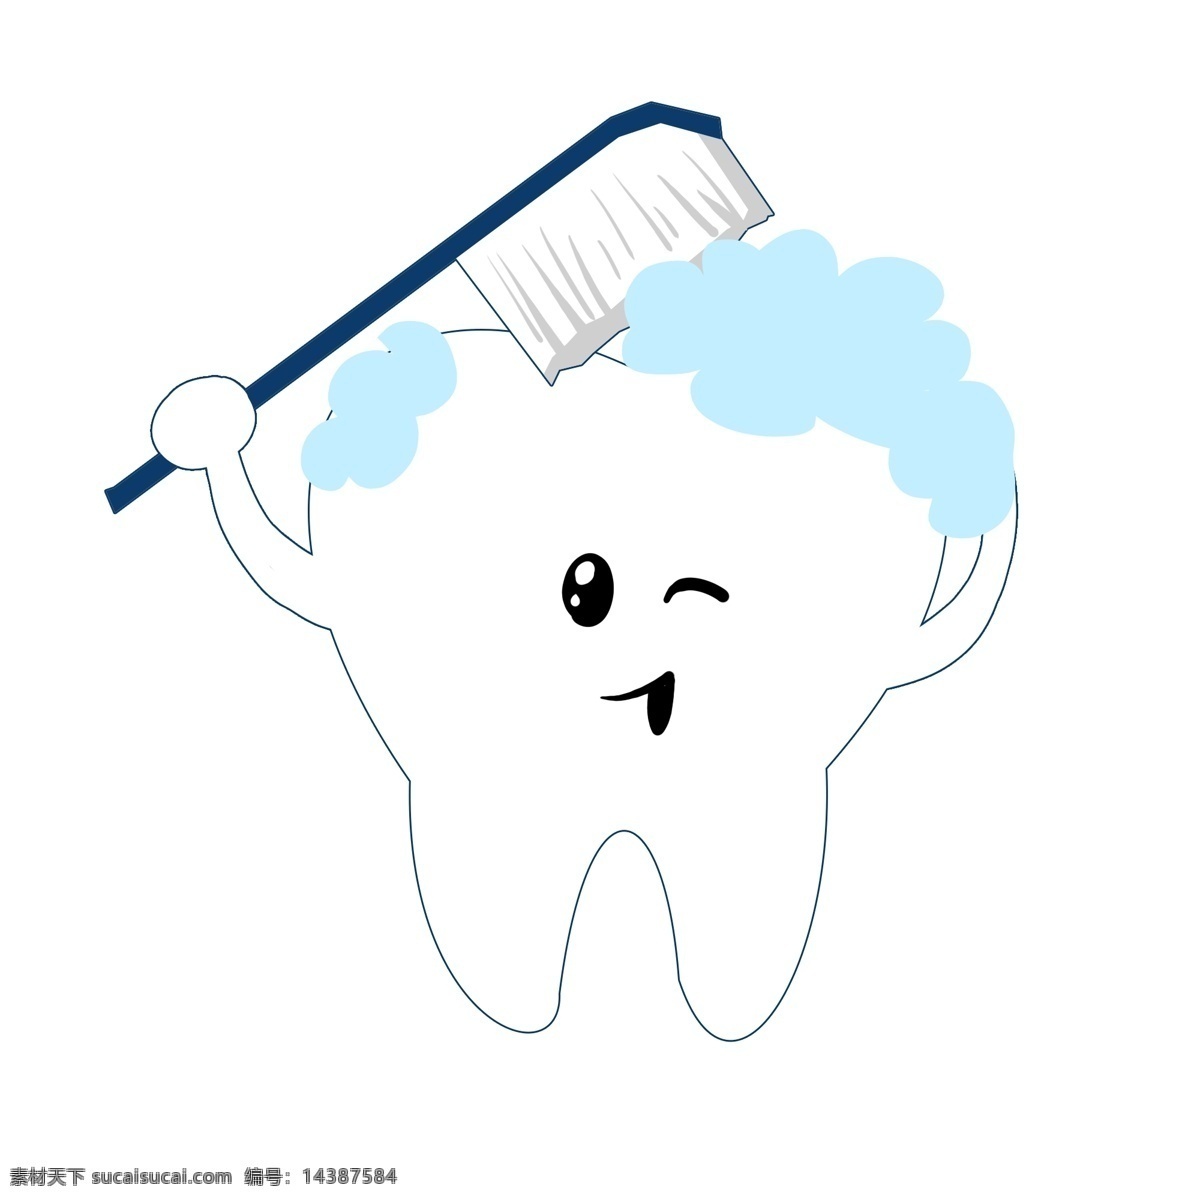 卡通 创意 刷牙 插图 口腔 白色的牙齿 漂亮的牙齿 可爱的牙齿 蓝色的牙刷 蓝色的牙膏 人体器官